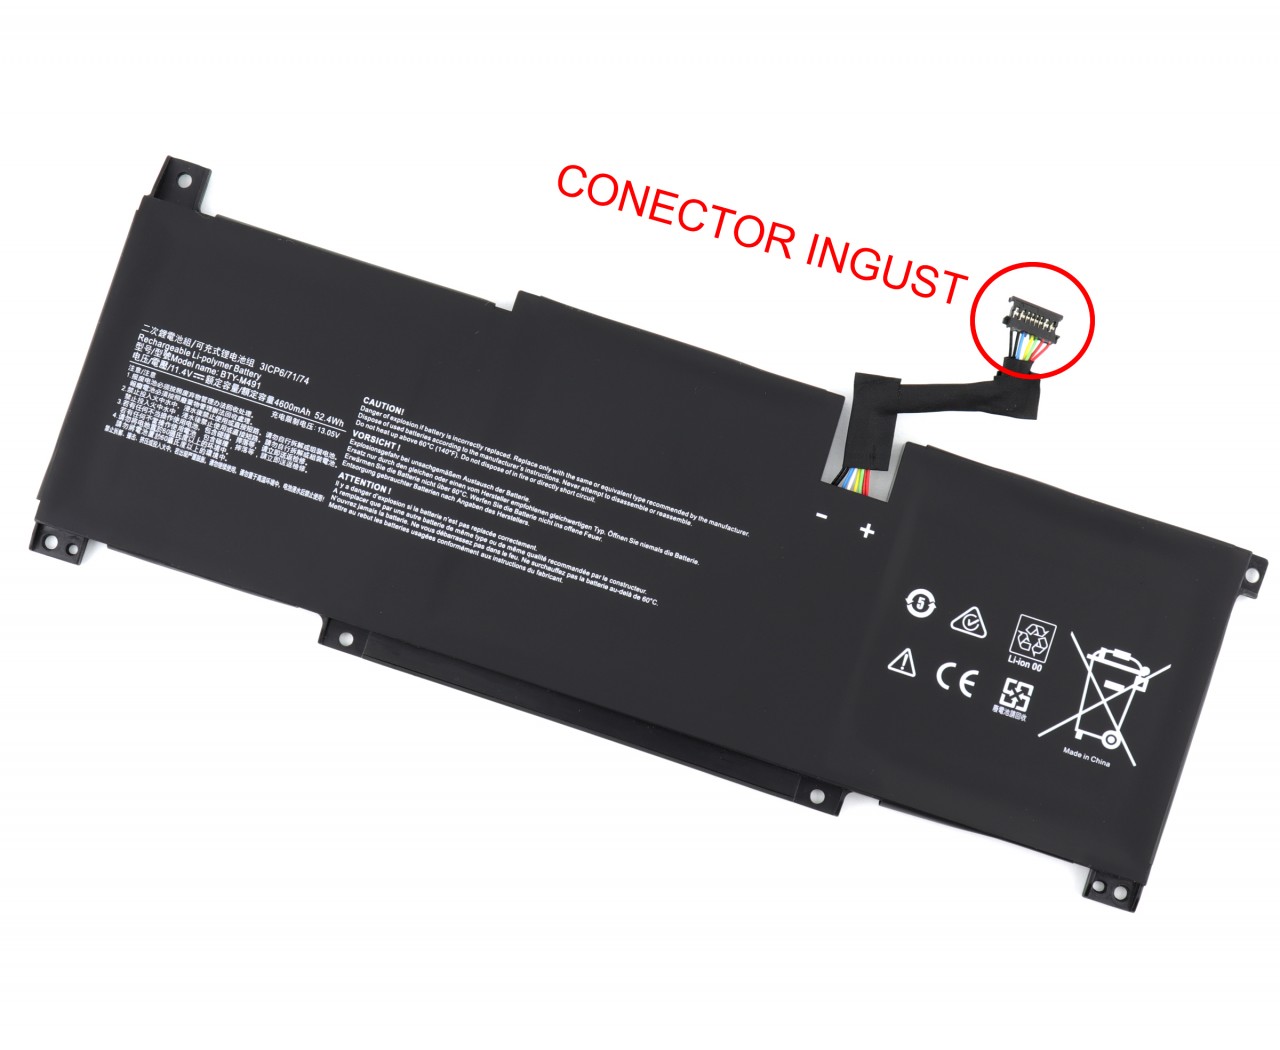 Baterie MSI Stealth 5M Series Oem 52.4Wh Conector Ingust